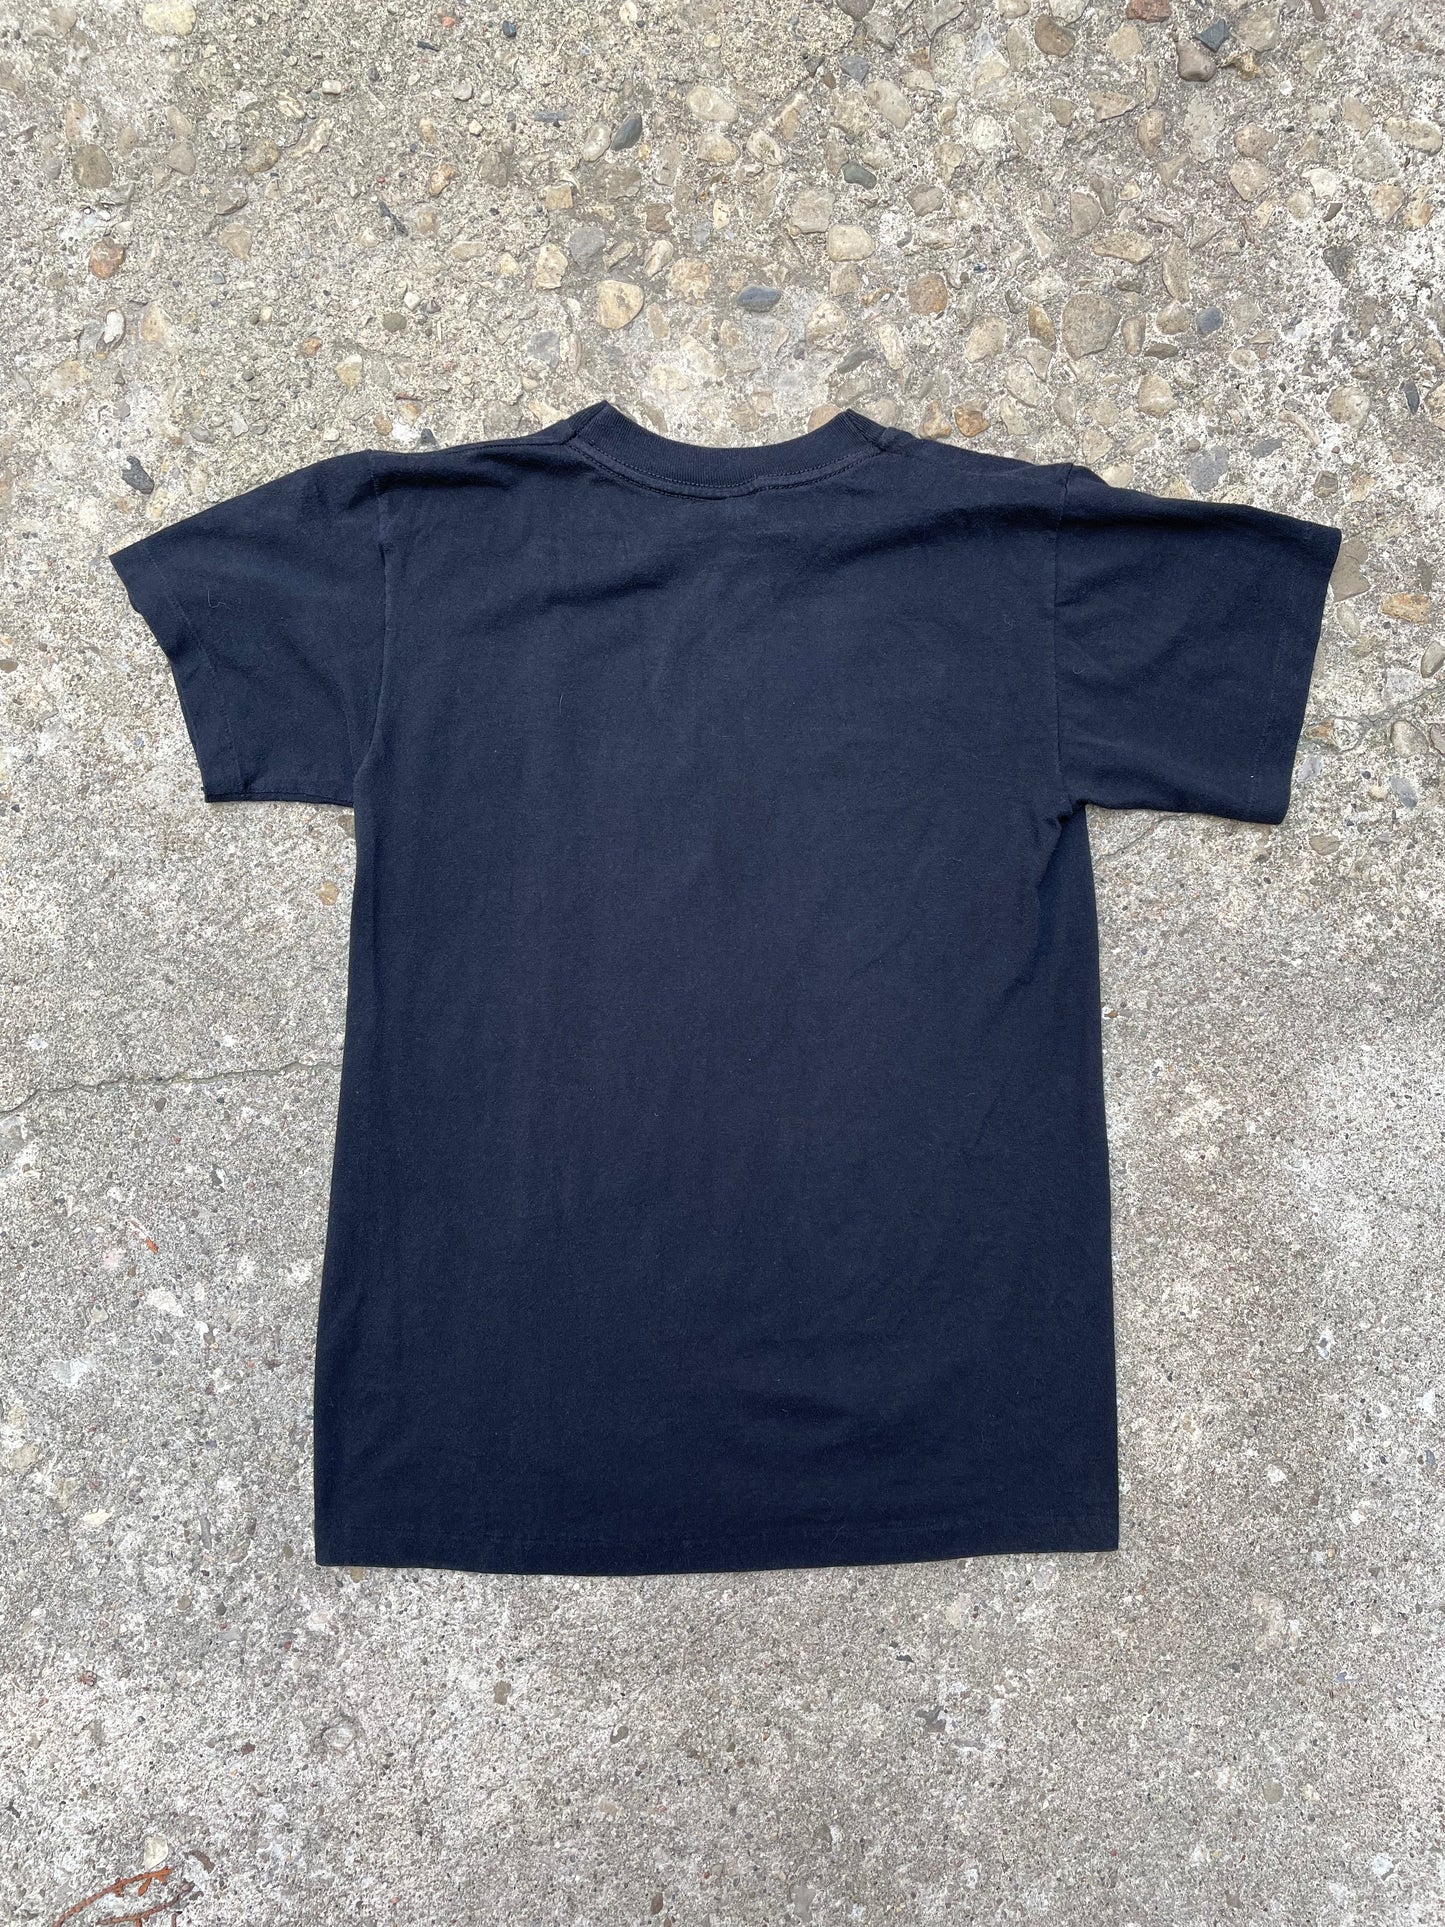 1987 Albert Einstein Graphic T-Shirt - S